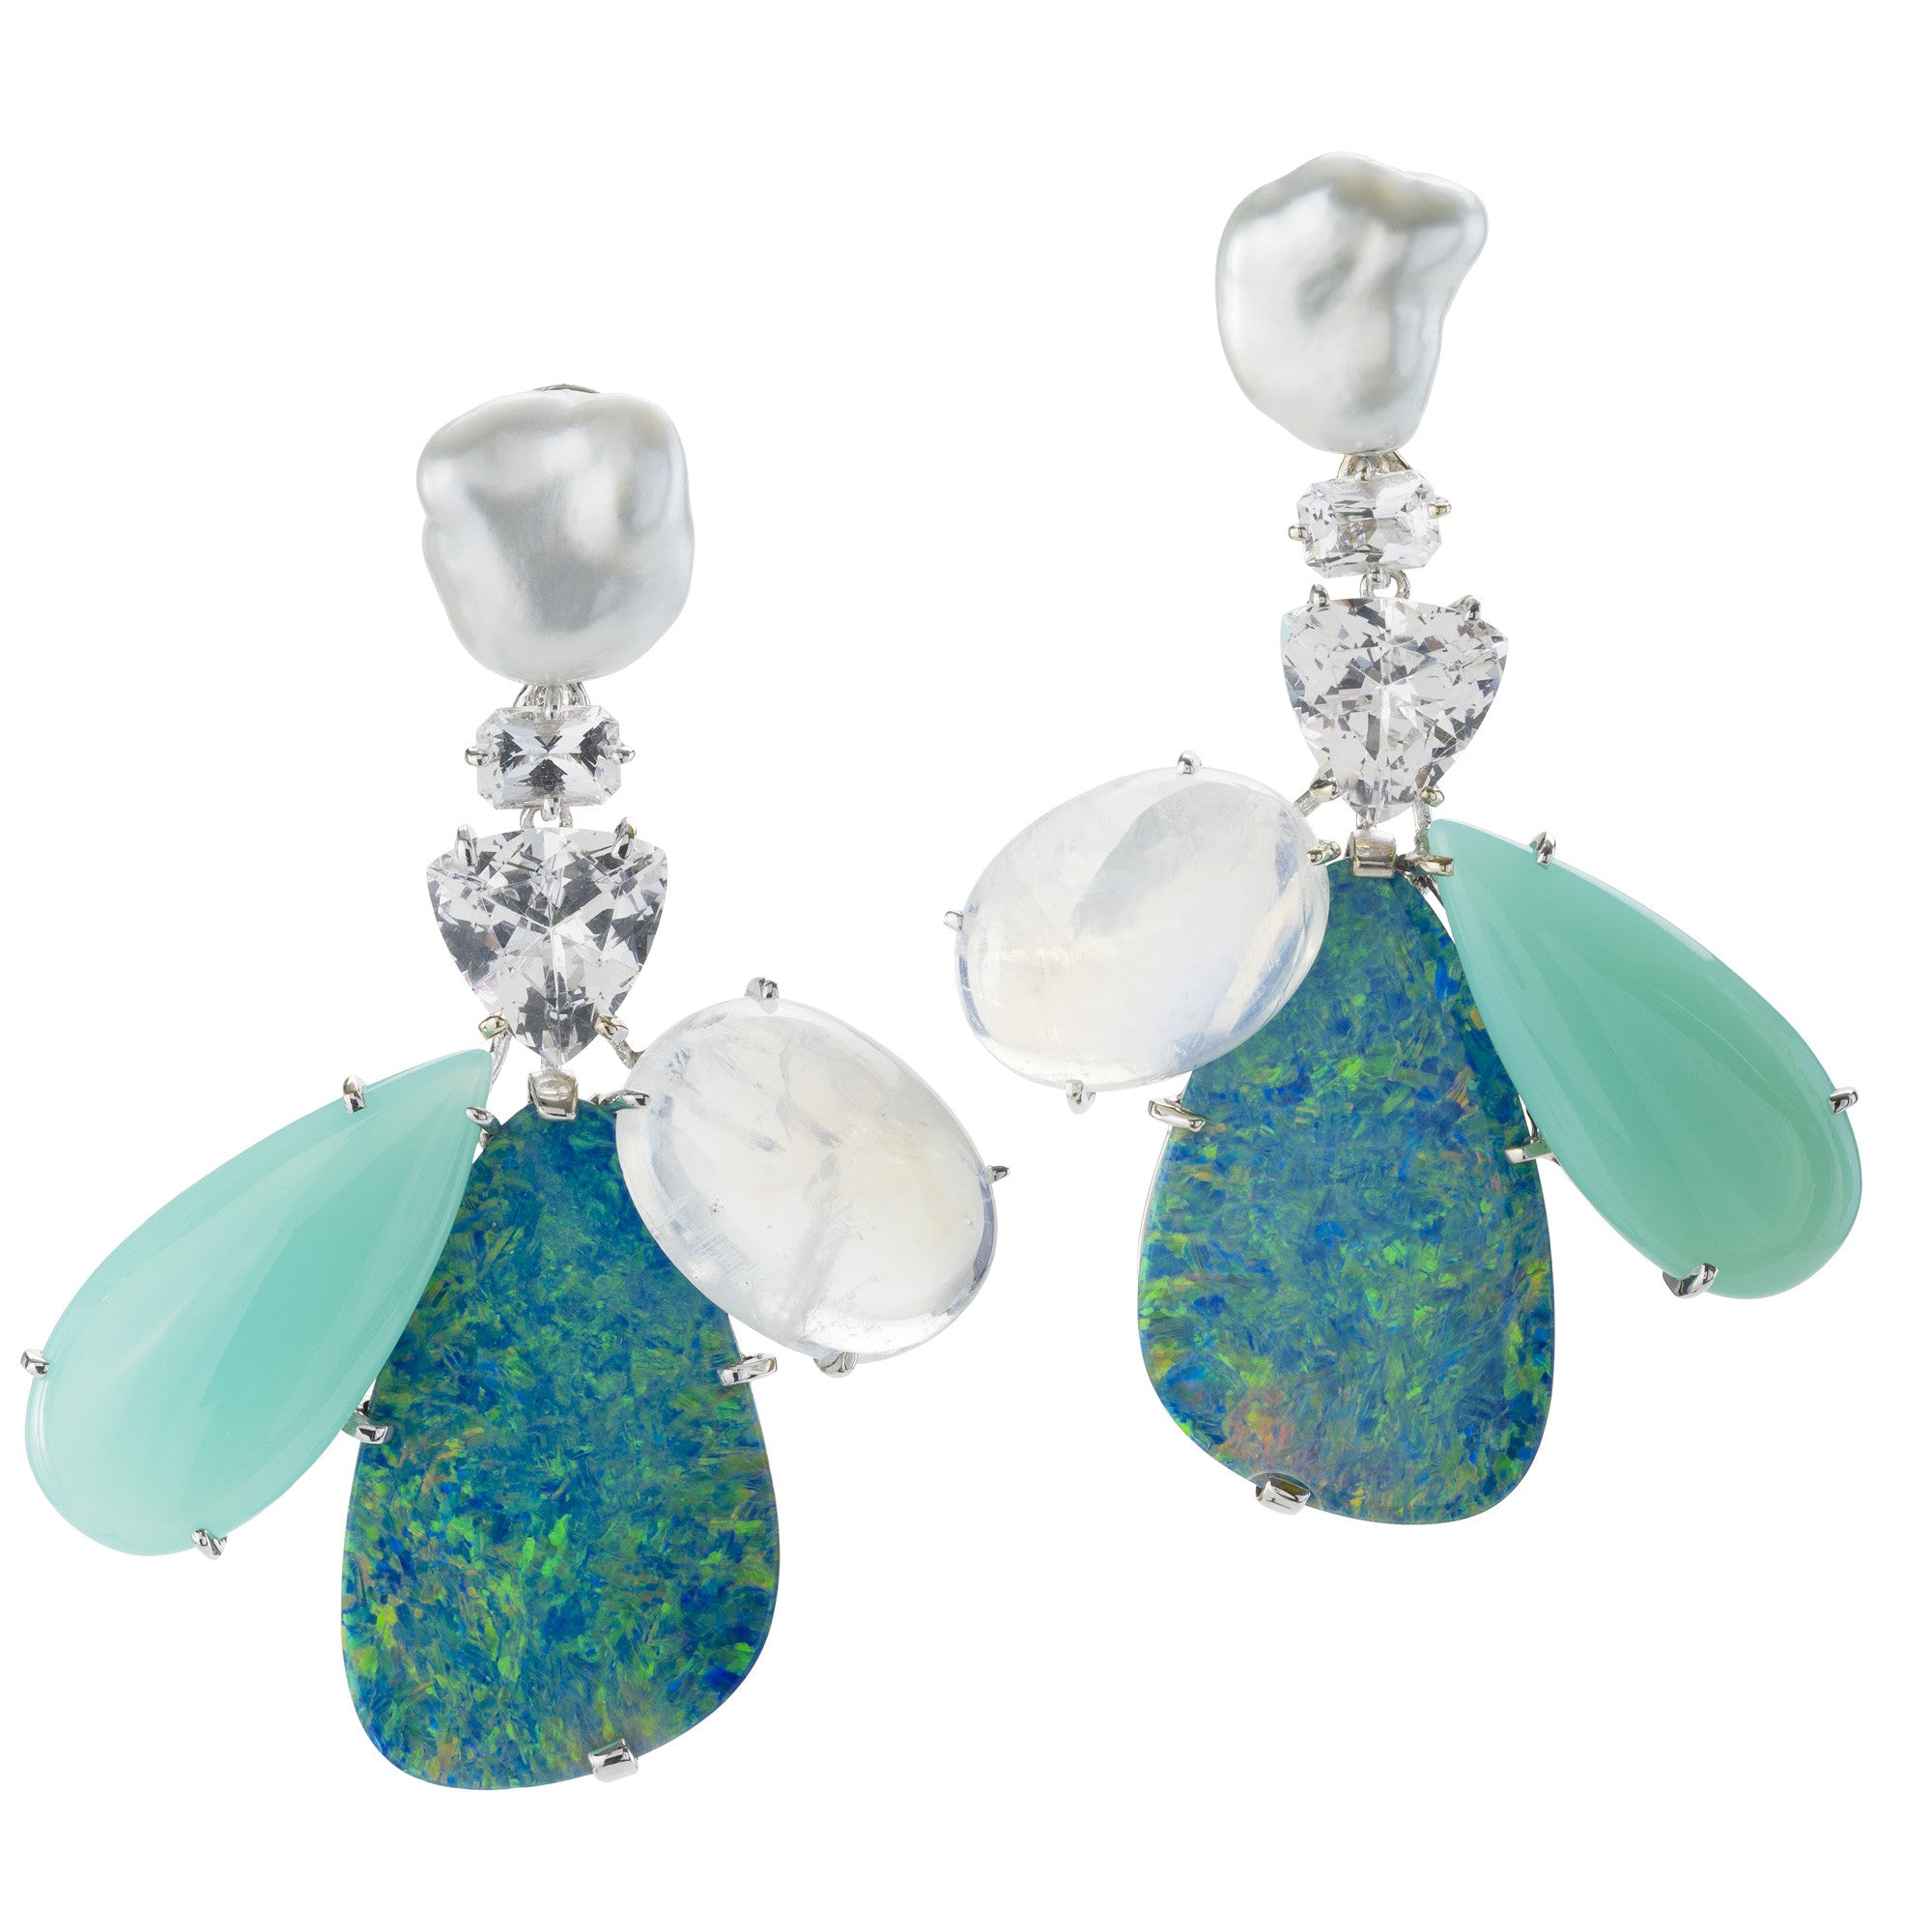 OVERLAP V opal earrings